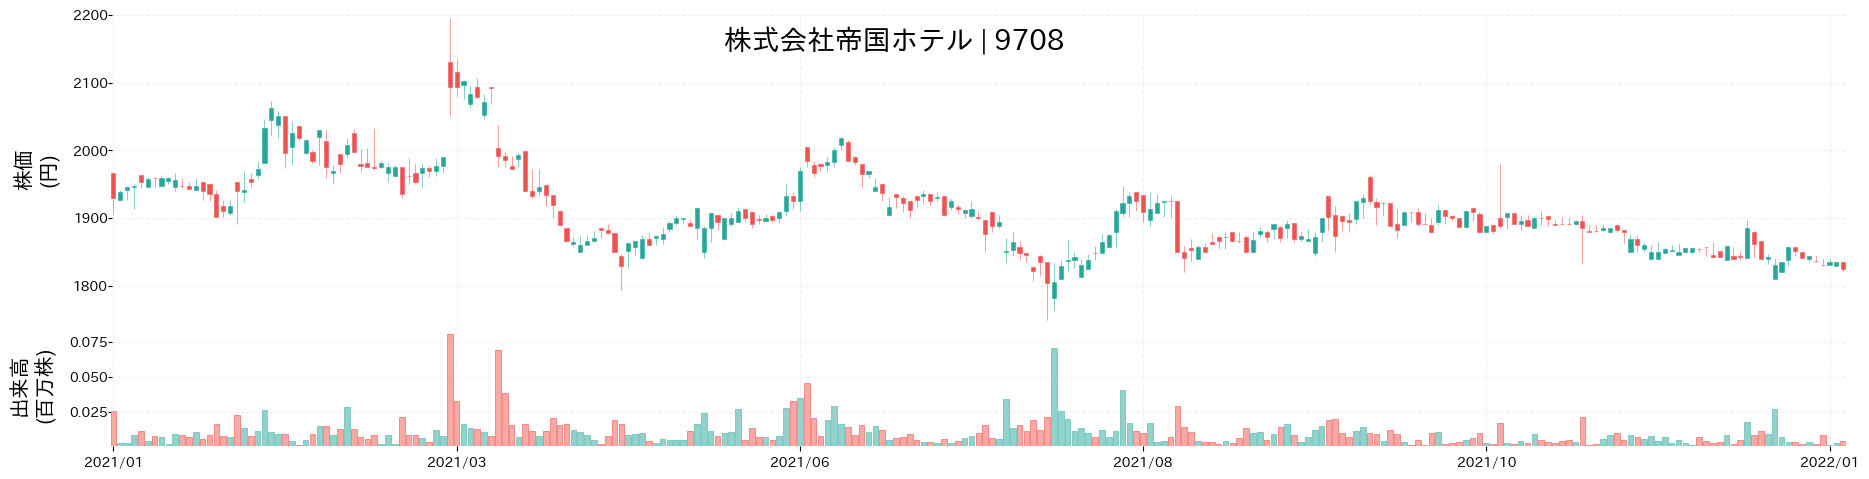 帝国ホテルの株価推移(2021)